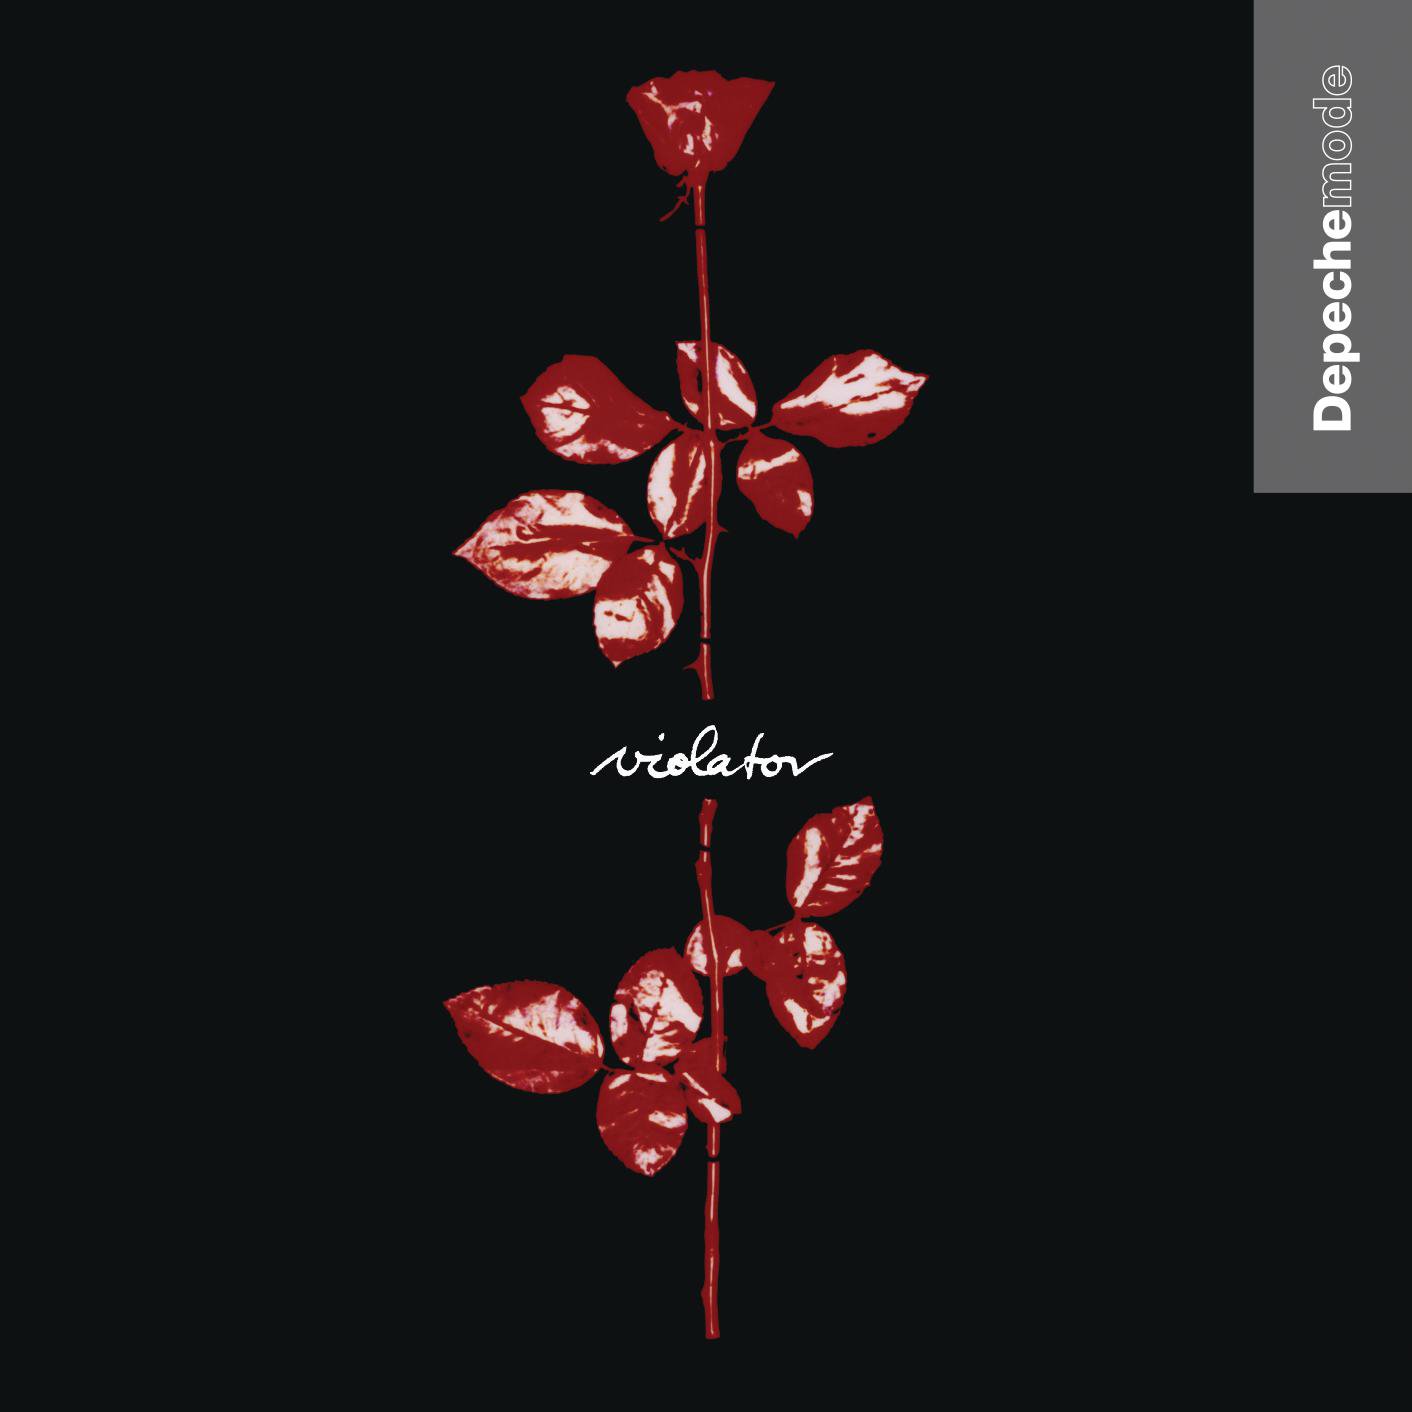 29 años del 'Violator', el disco más famoso de Depeche Mode